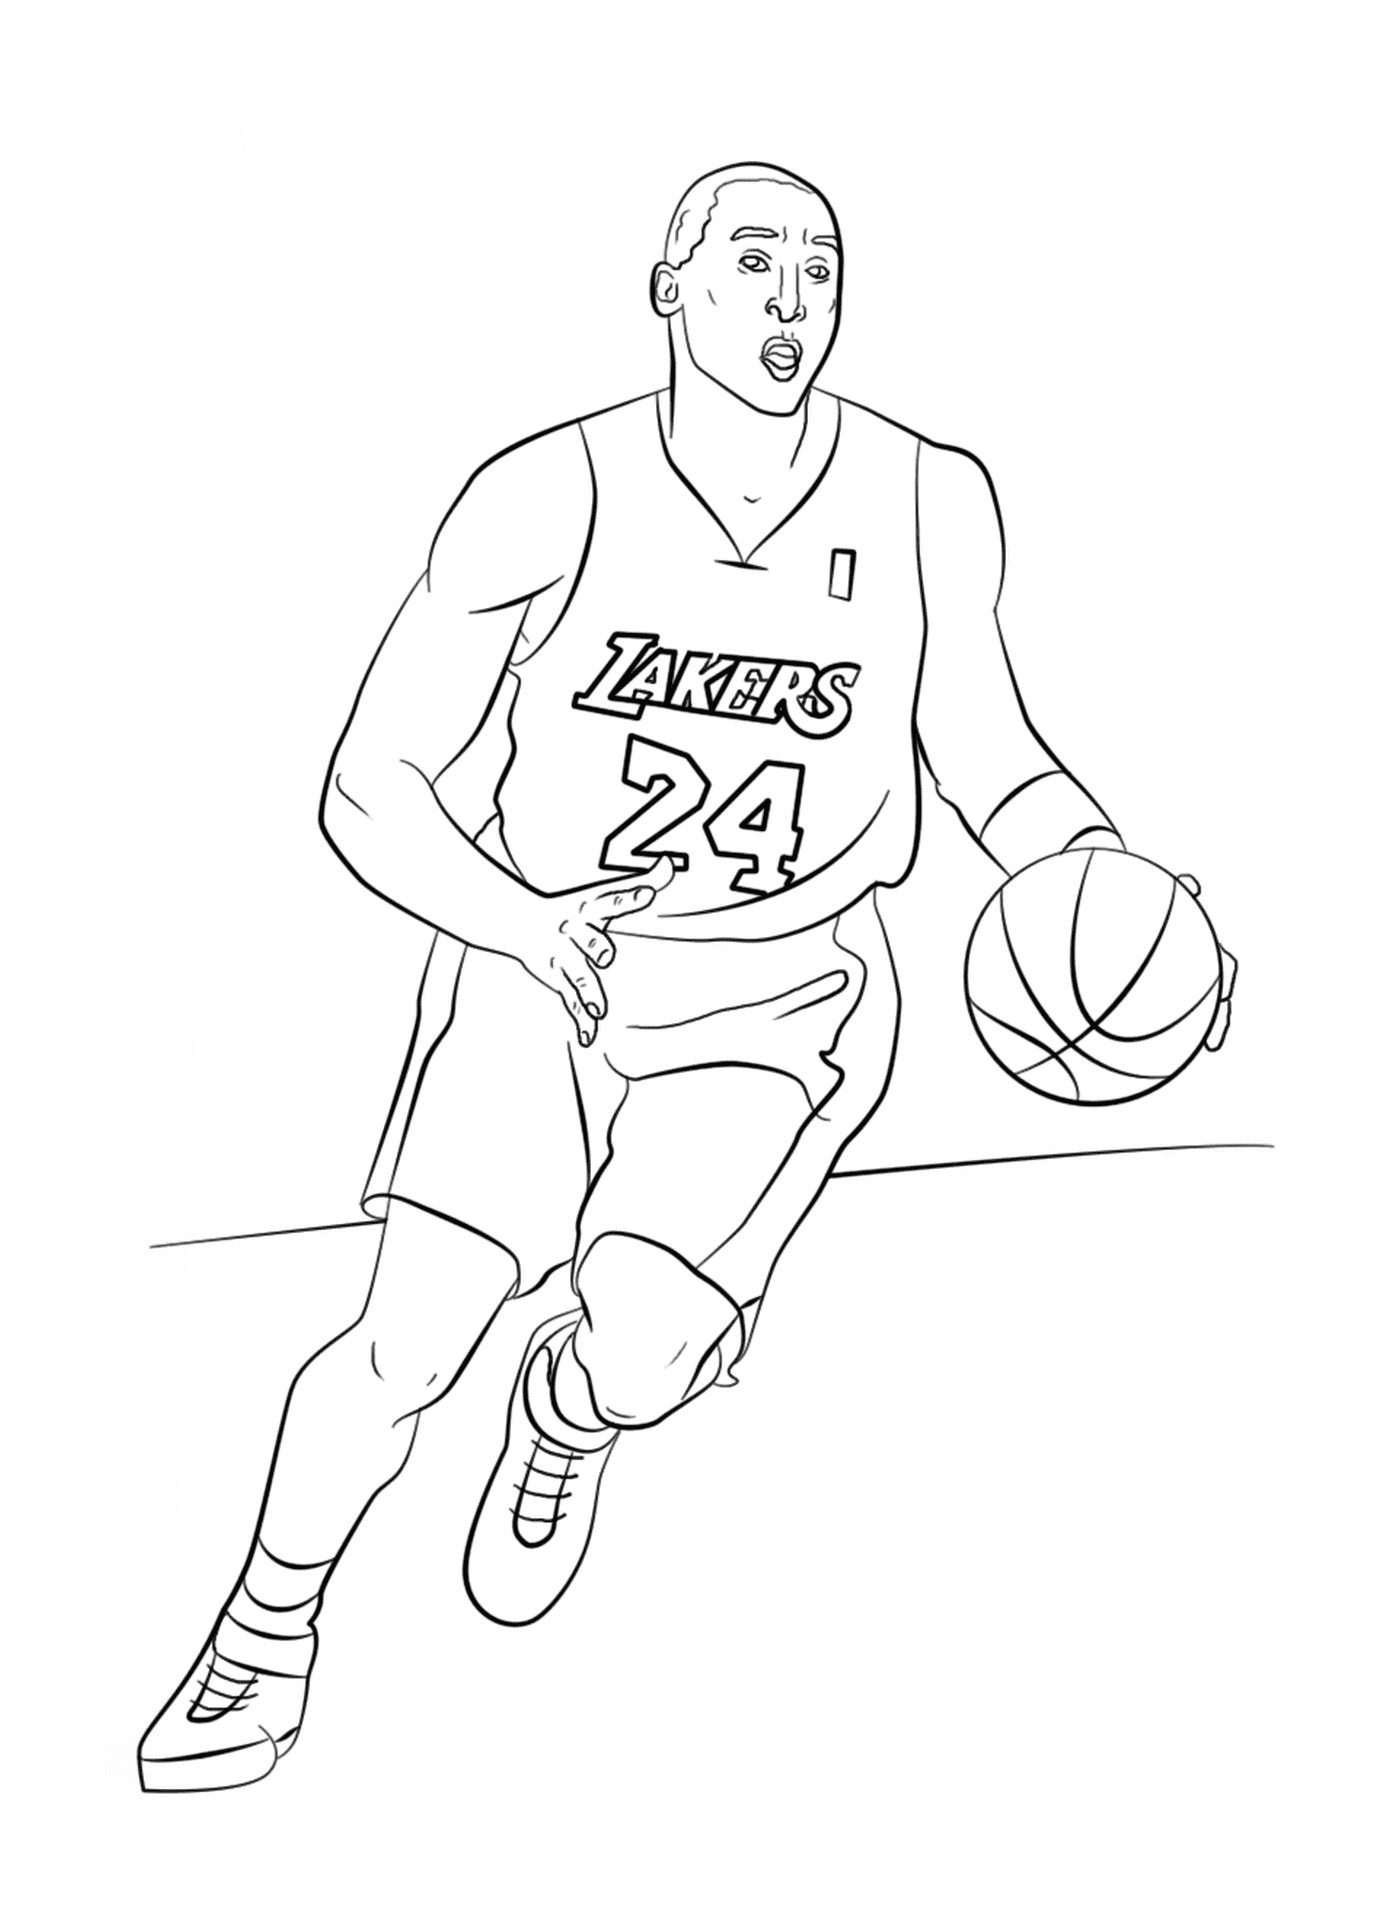   Kobe Bryant tient un ballon de basketball 